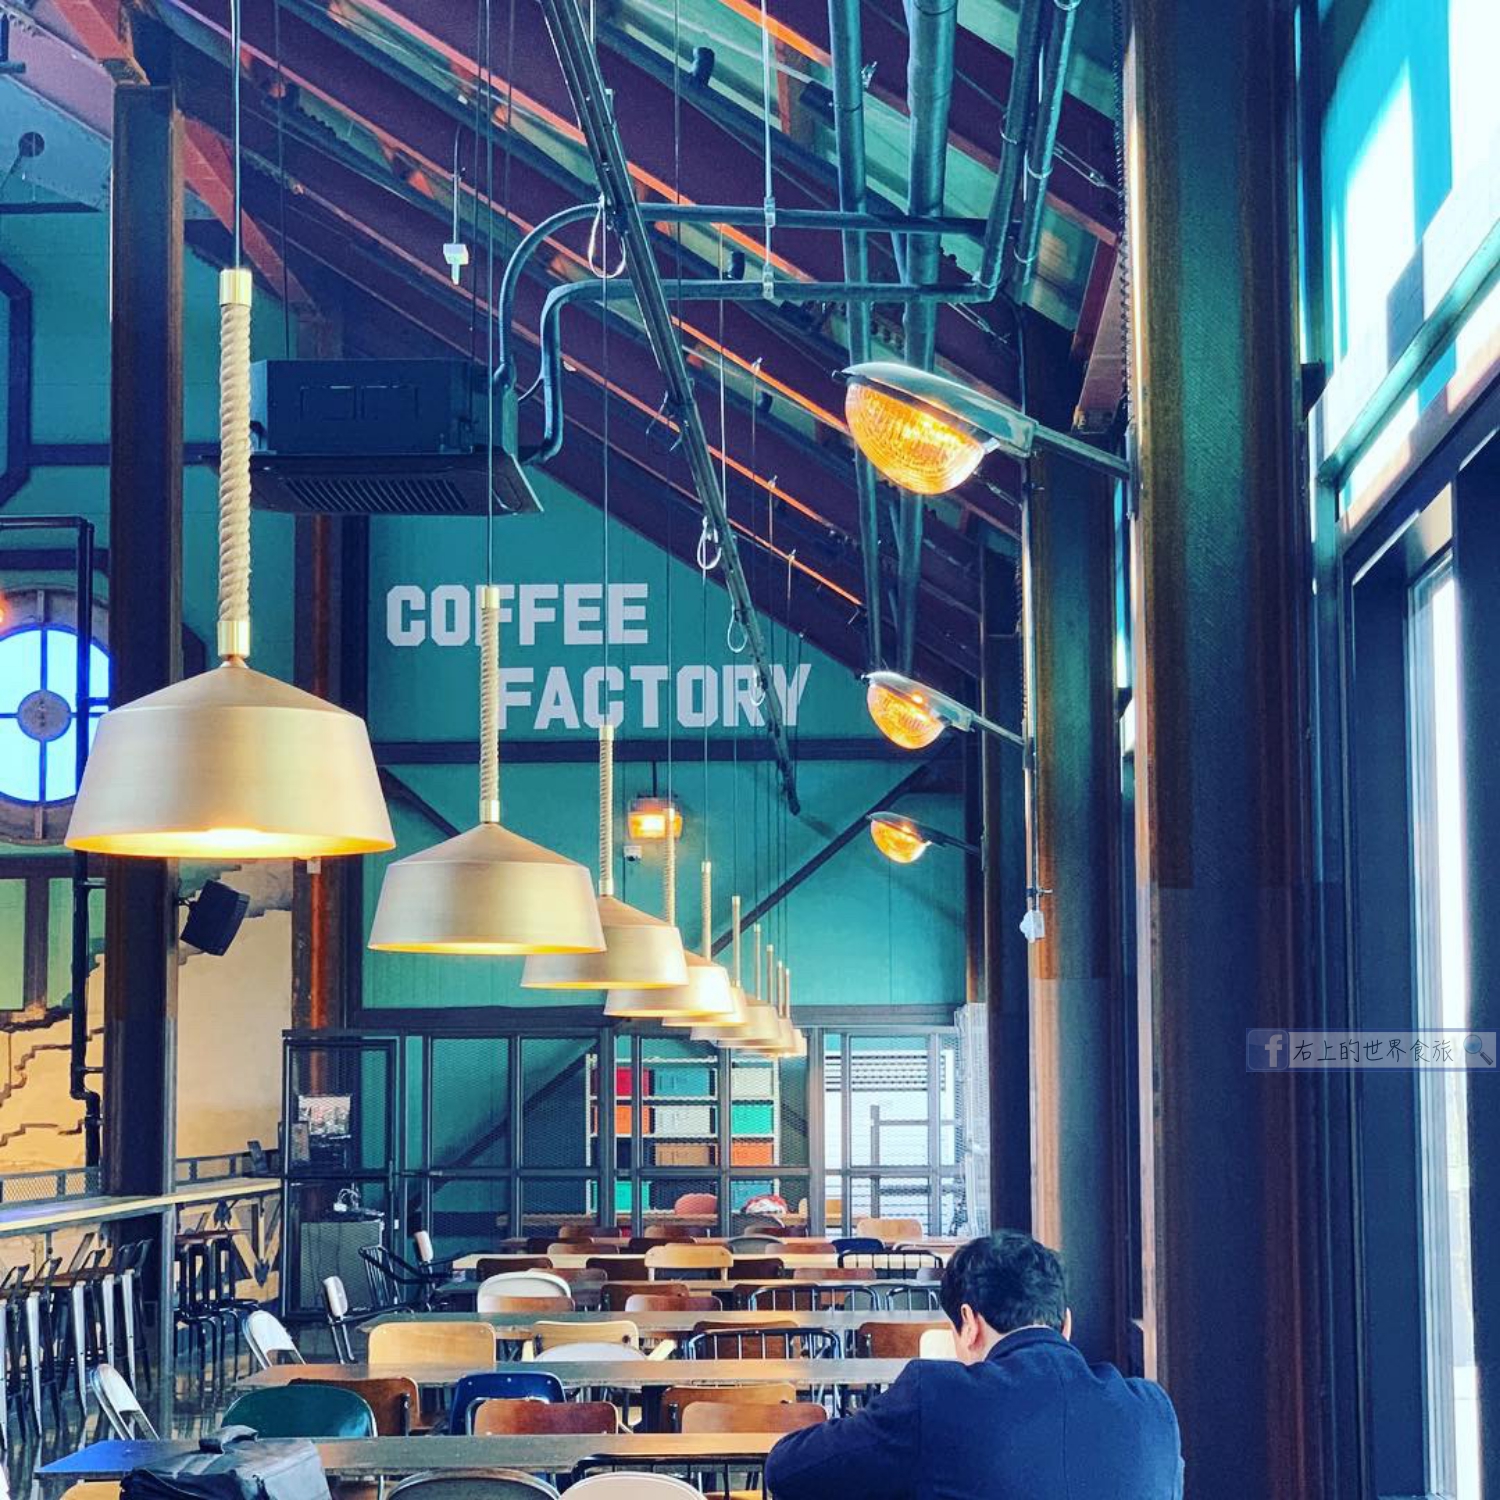 首爾網美咖啡-戲劇化大階梯．英倫工業風麵包咖啡店：DIRTY TRUNK COFFEE FACTORY（더티트렁크） @右上世界食旅